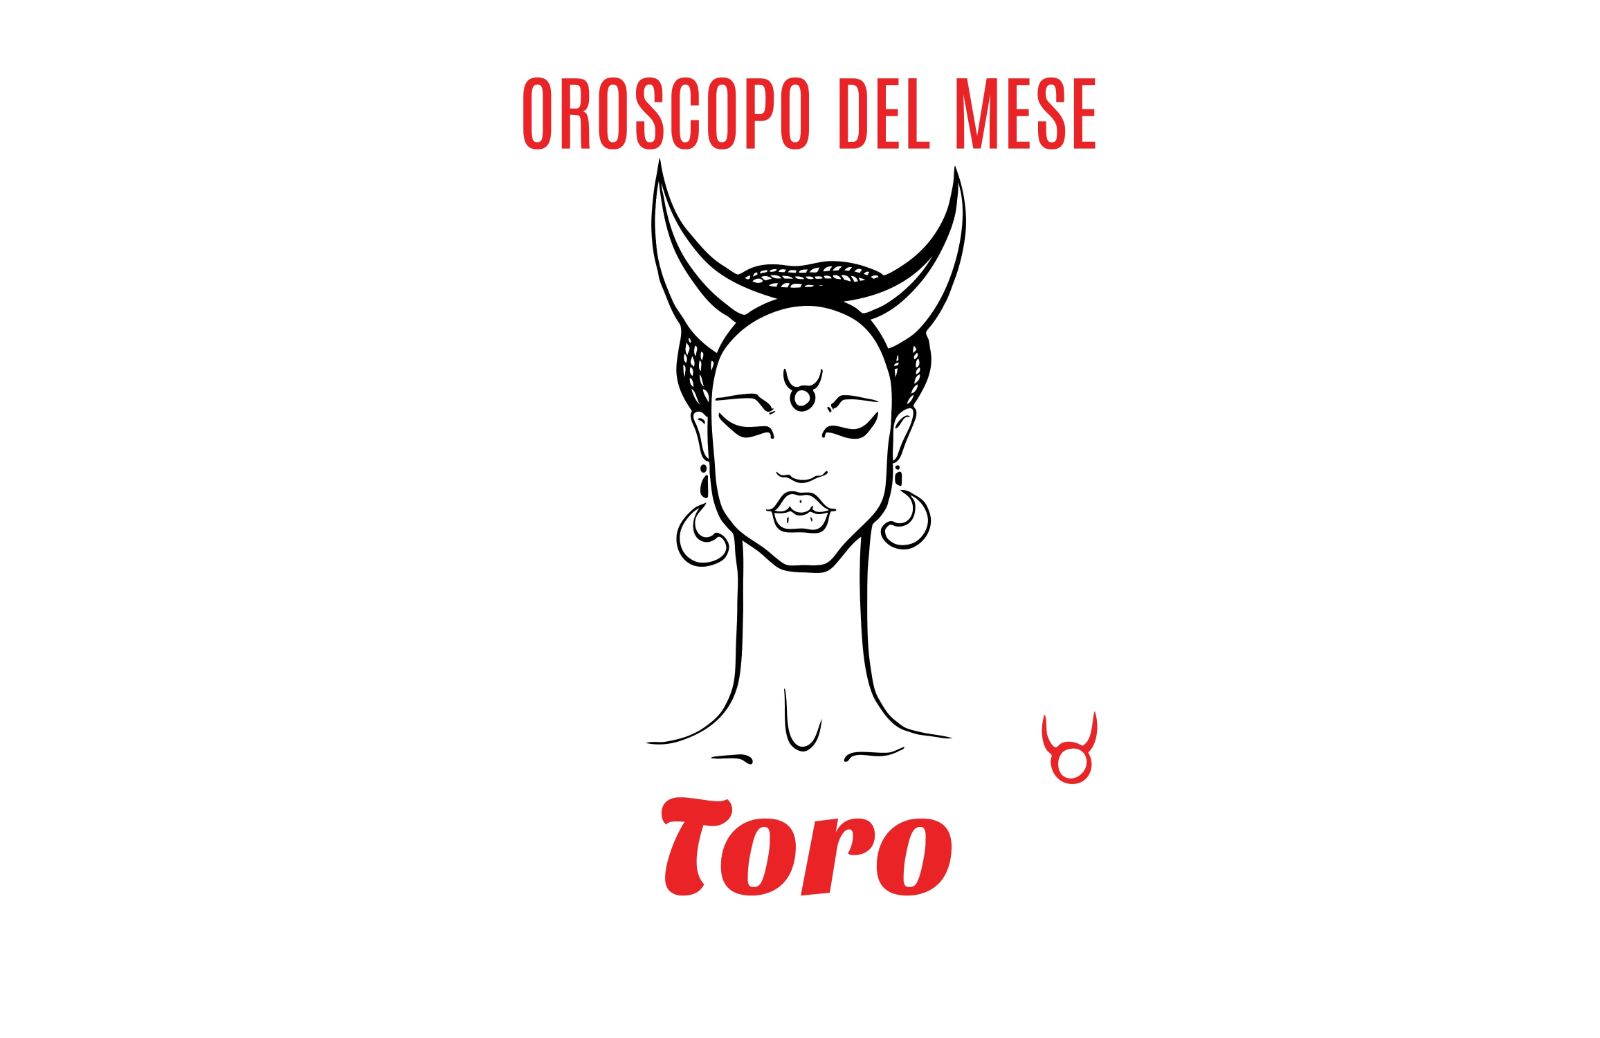 Oroscopo del mese - Toro: dicembre 2019